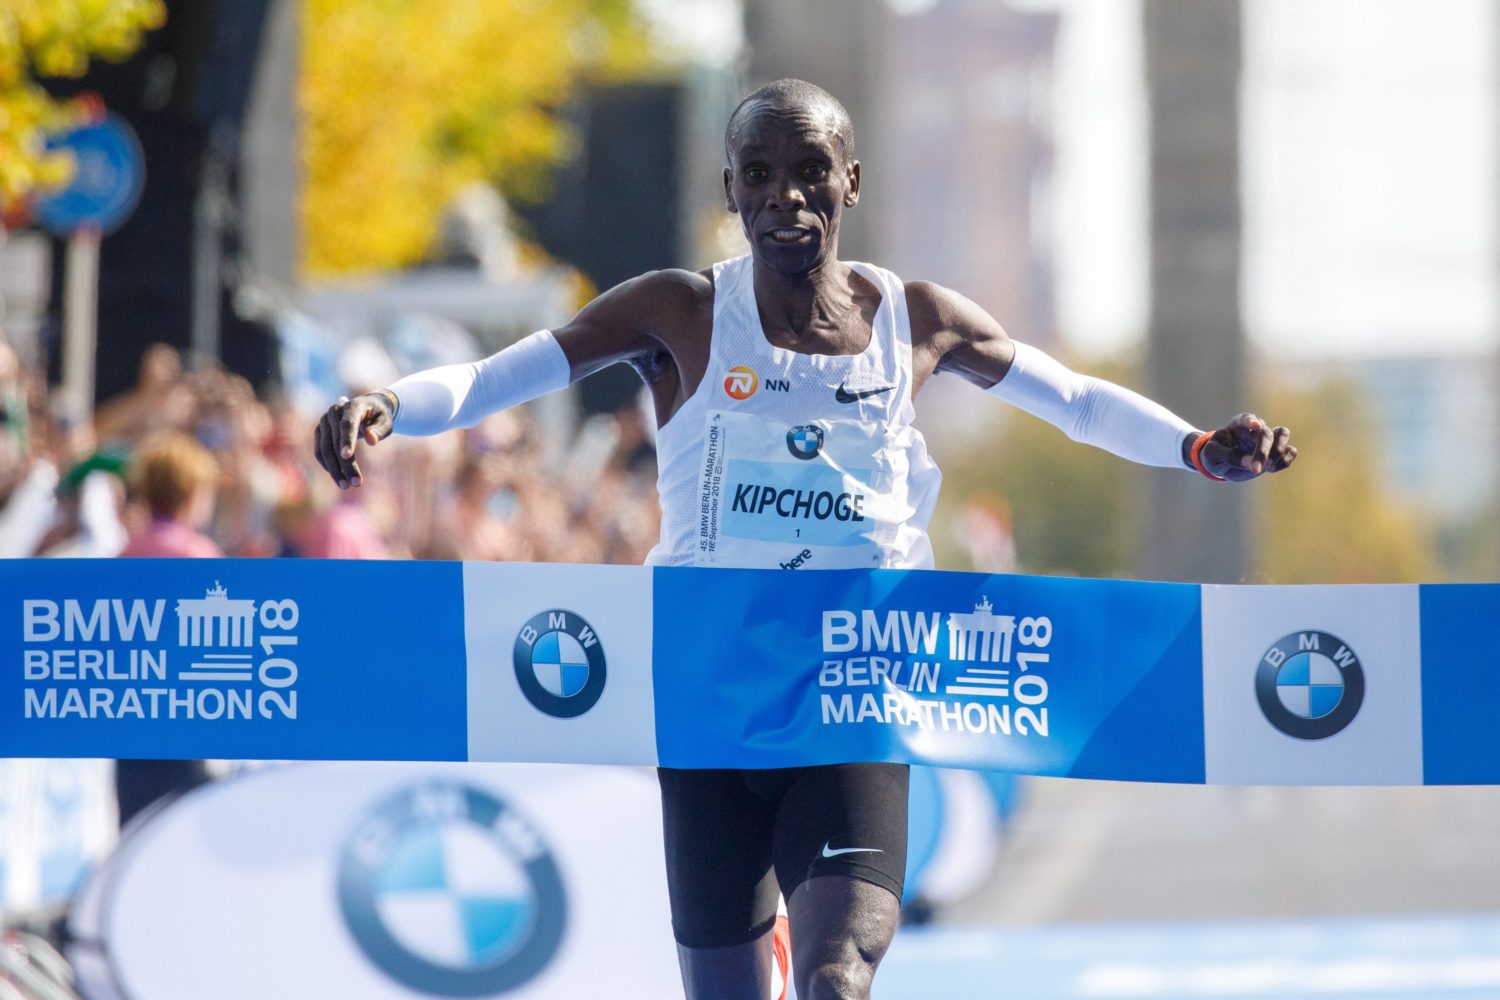 Der Marathon-Weltrekord wurde in Berlin gebrochen! 2018 läuft Eliud Kipchoge (KEN) nach 2:01:39 Stunden als Sieger ins Ziel. 